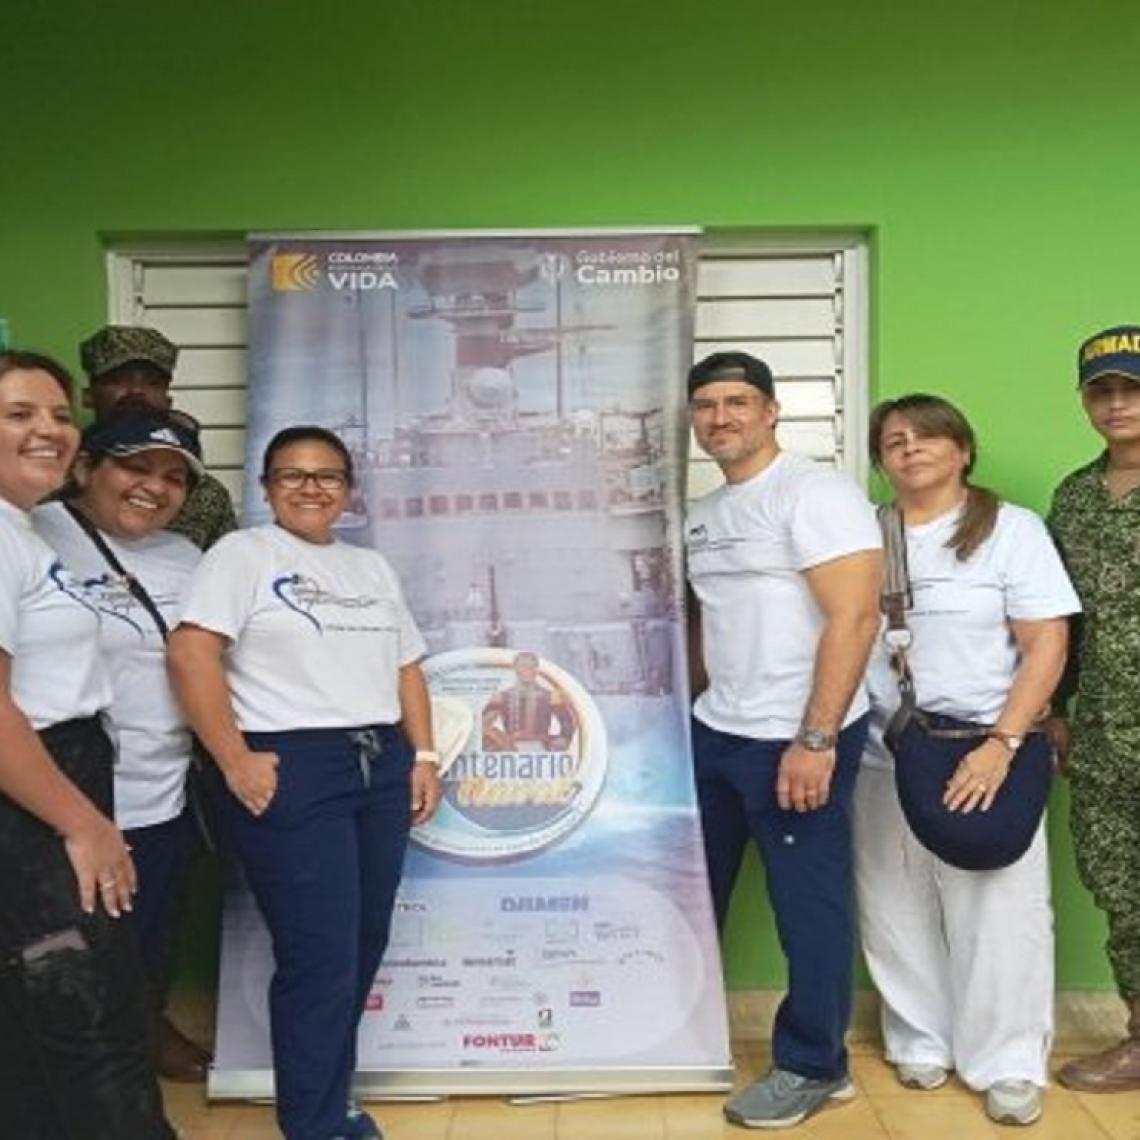 Más de 800 beneficiados con Jornada de Apoyo al Desarrollo en Santa Catalina - Bolívar